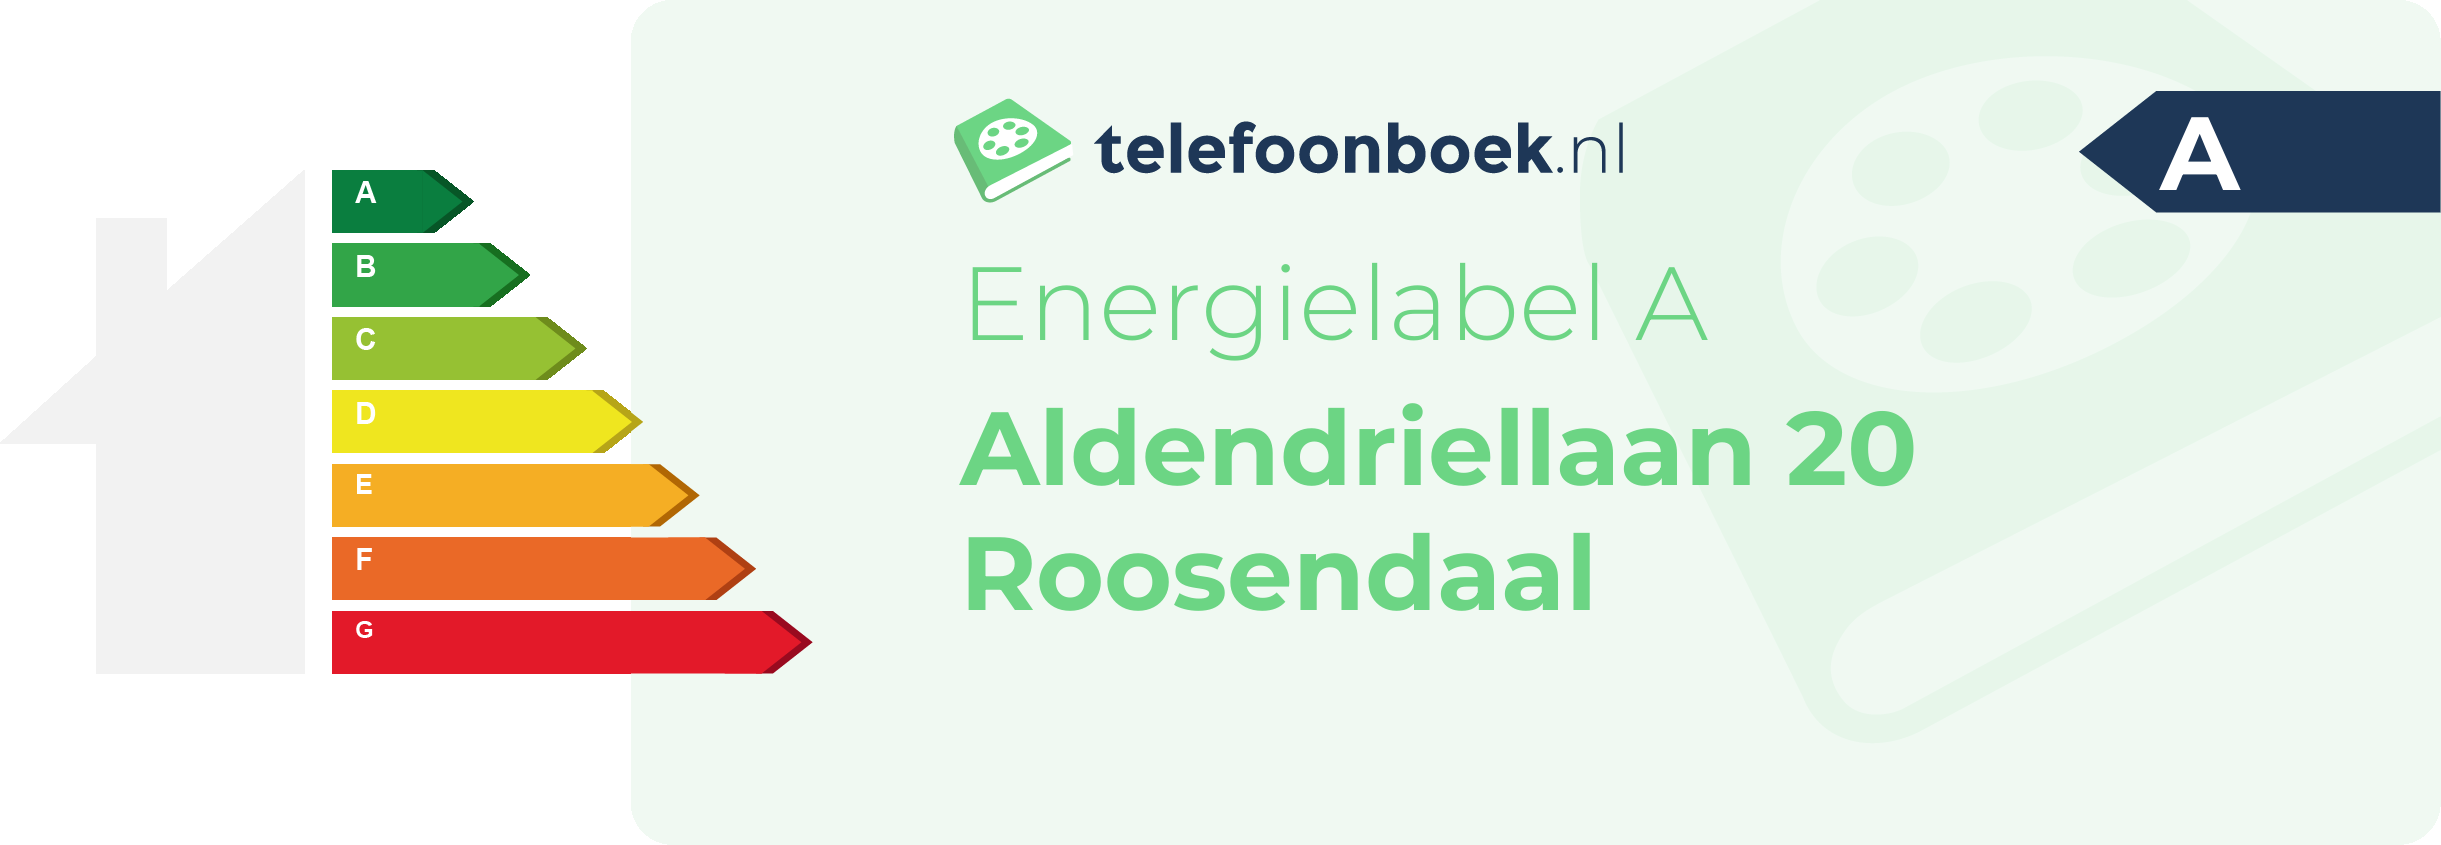 Energielabel Aldendriellaan 20 Roosendaal